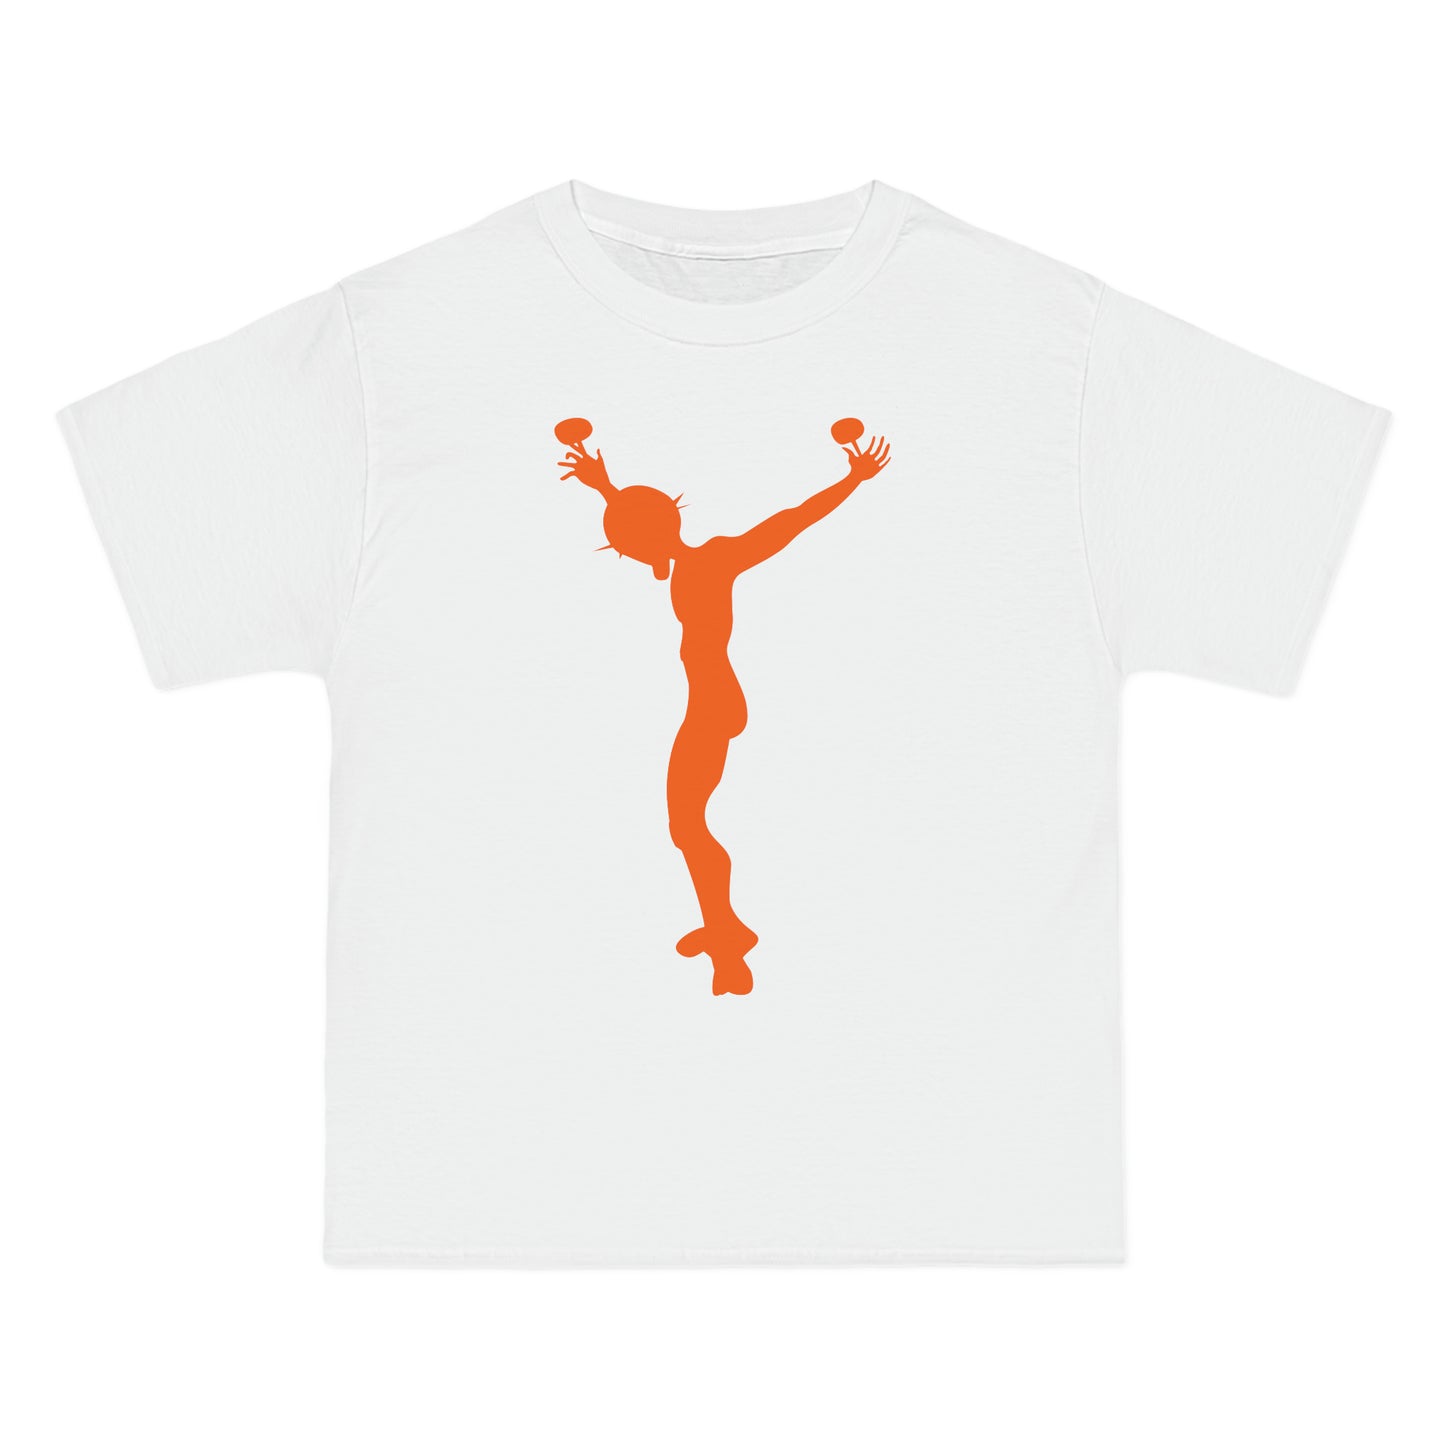 j7 premium T-shirt white-orange